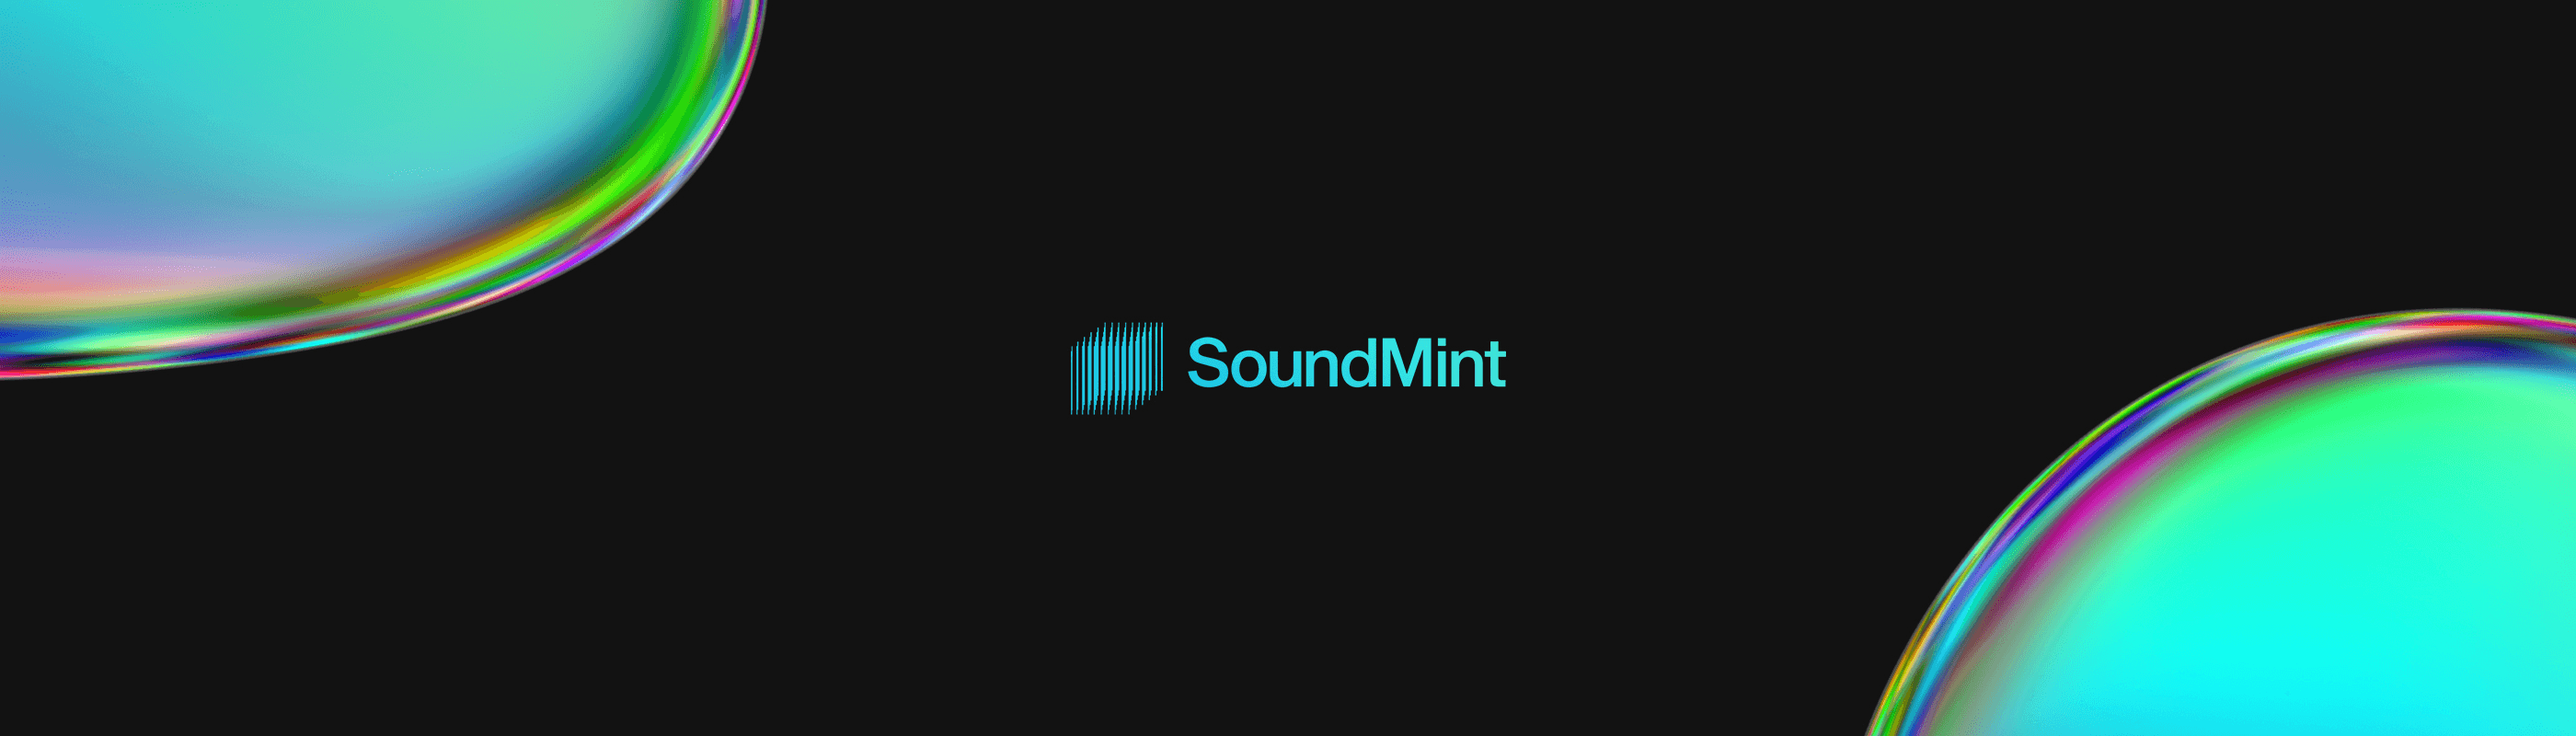 SoundMint bannière